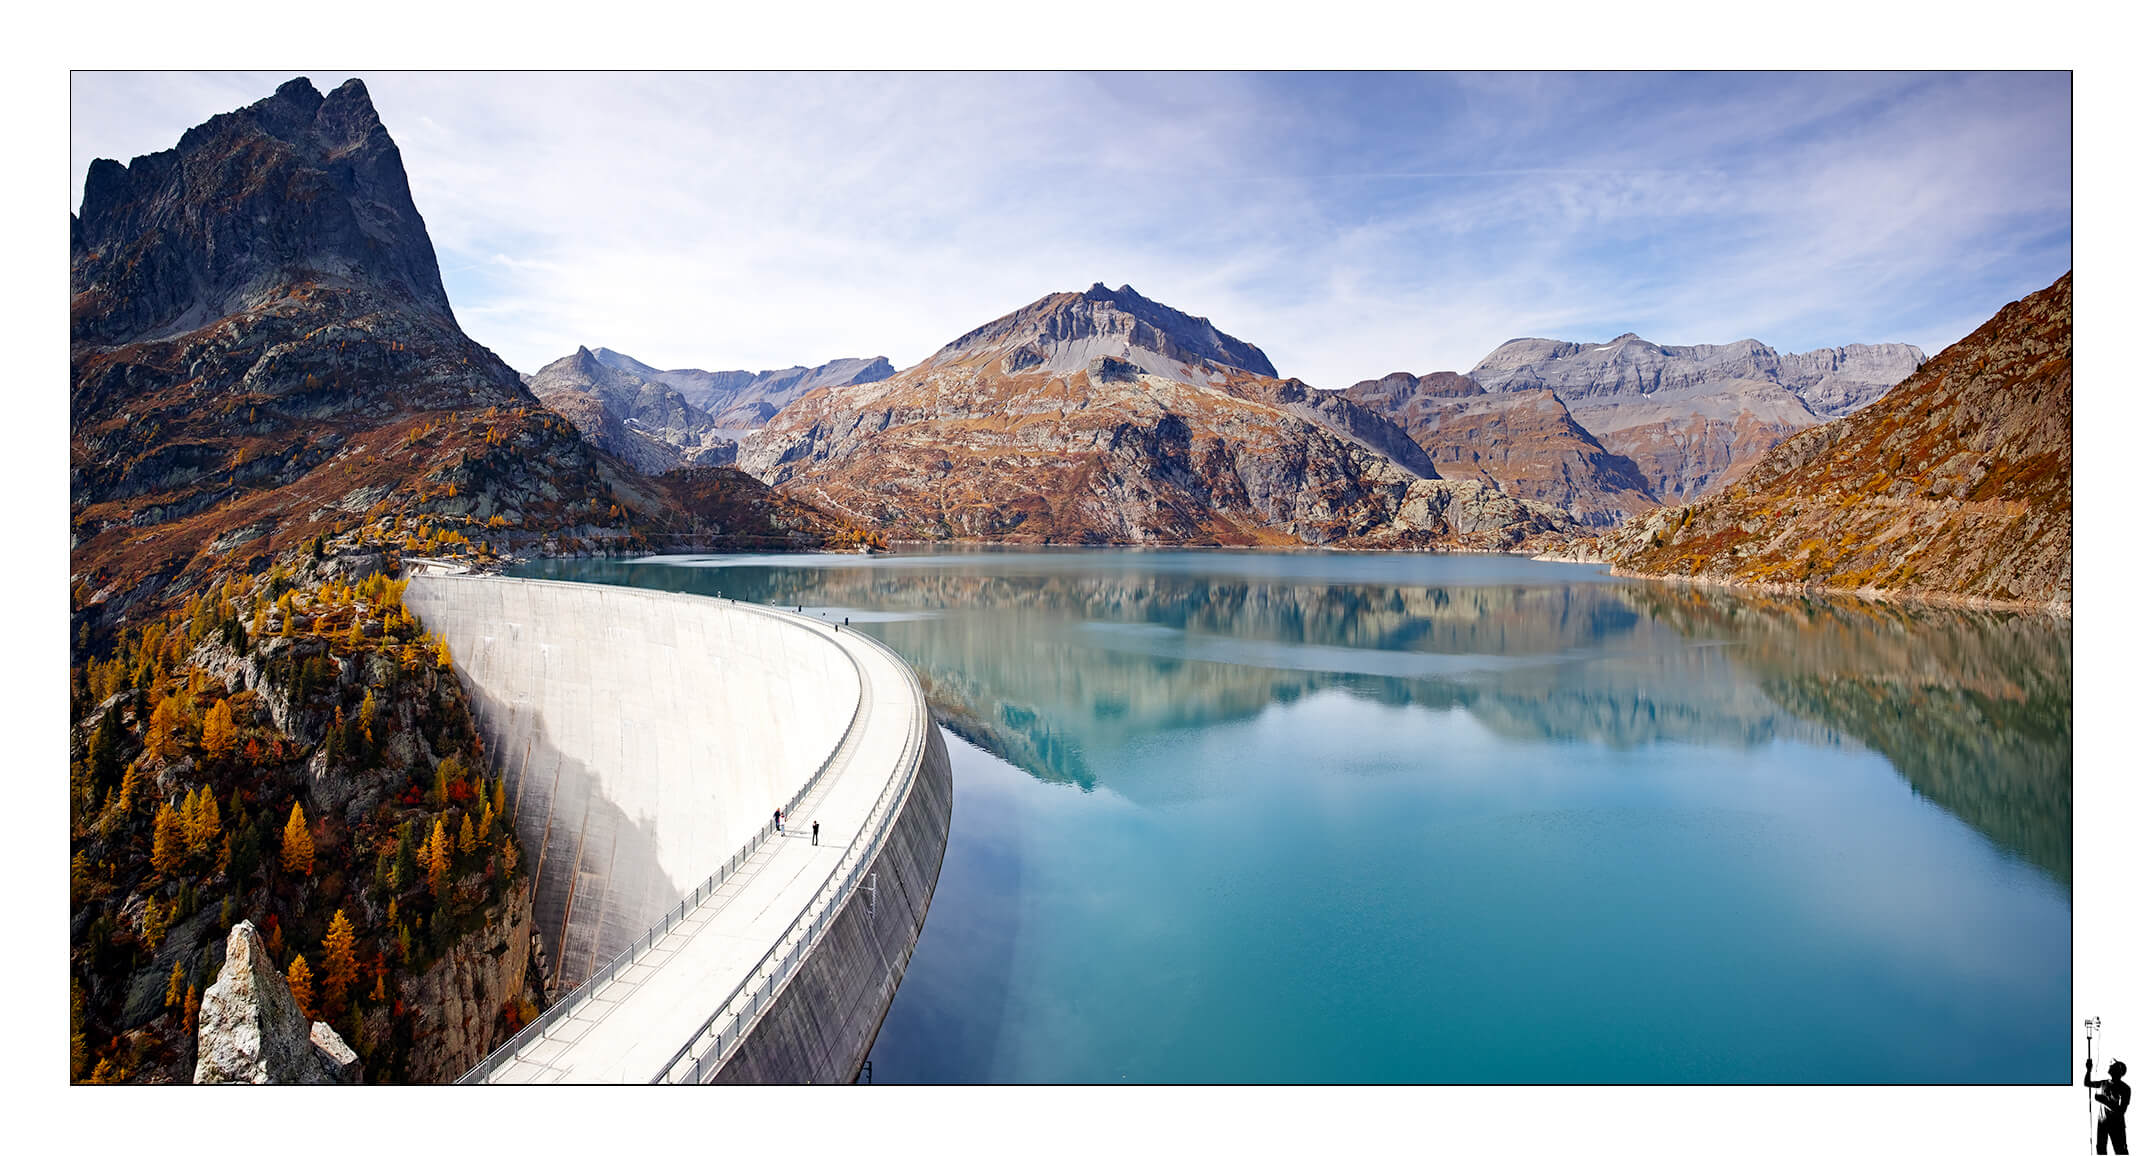 Deuxième image du célèbre barrage d'Emosson prise un peu plus haut